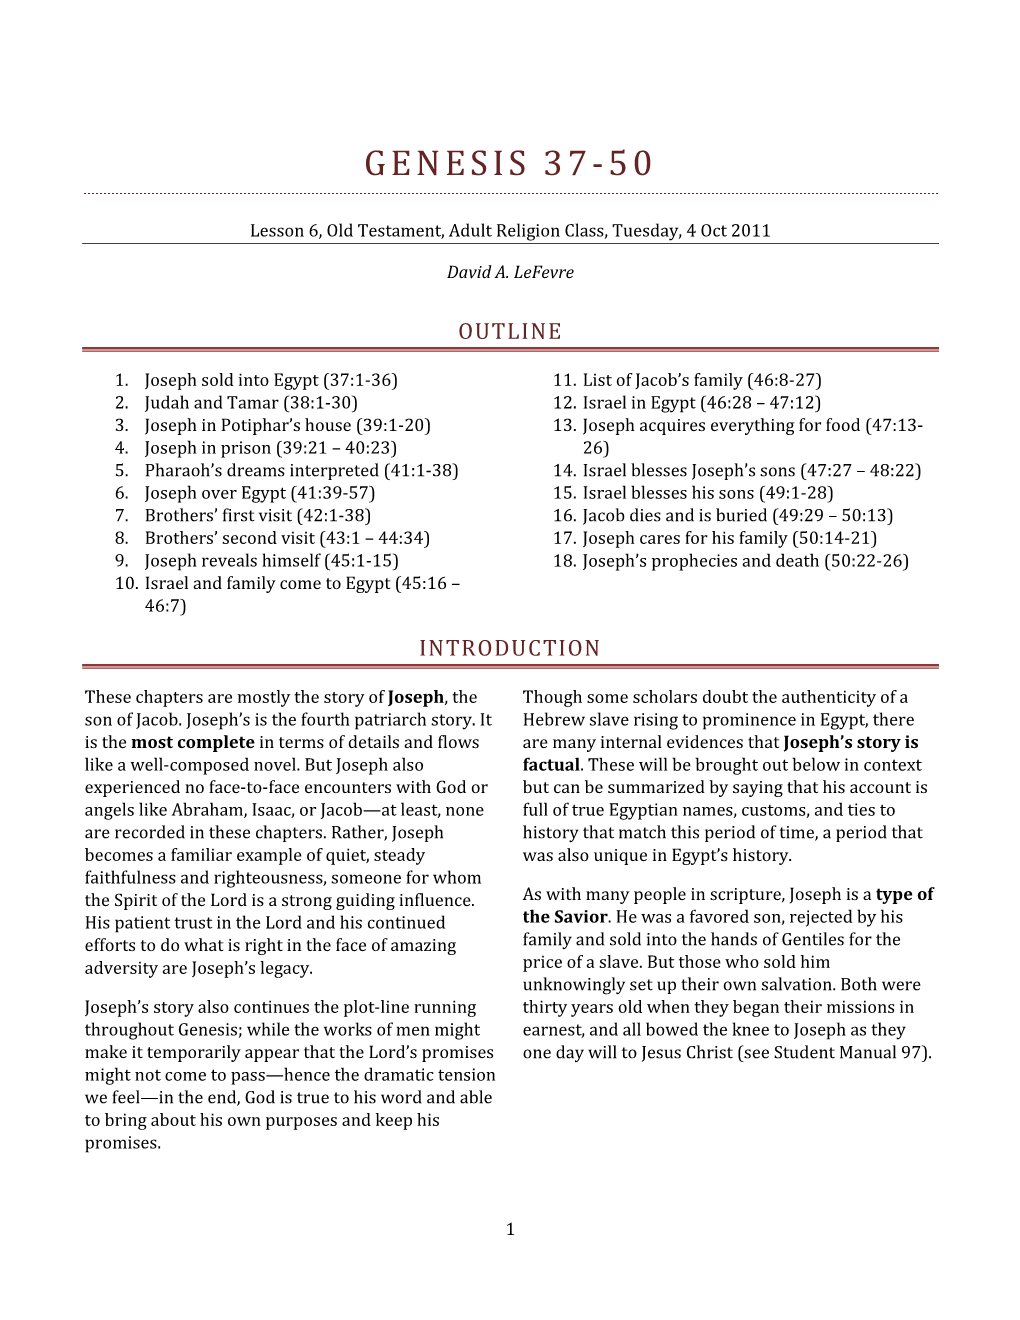 Genesis 37-50